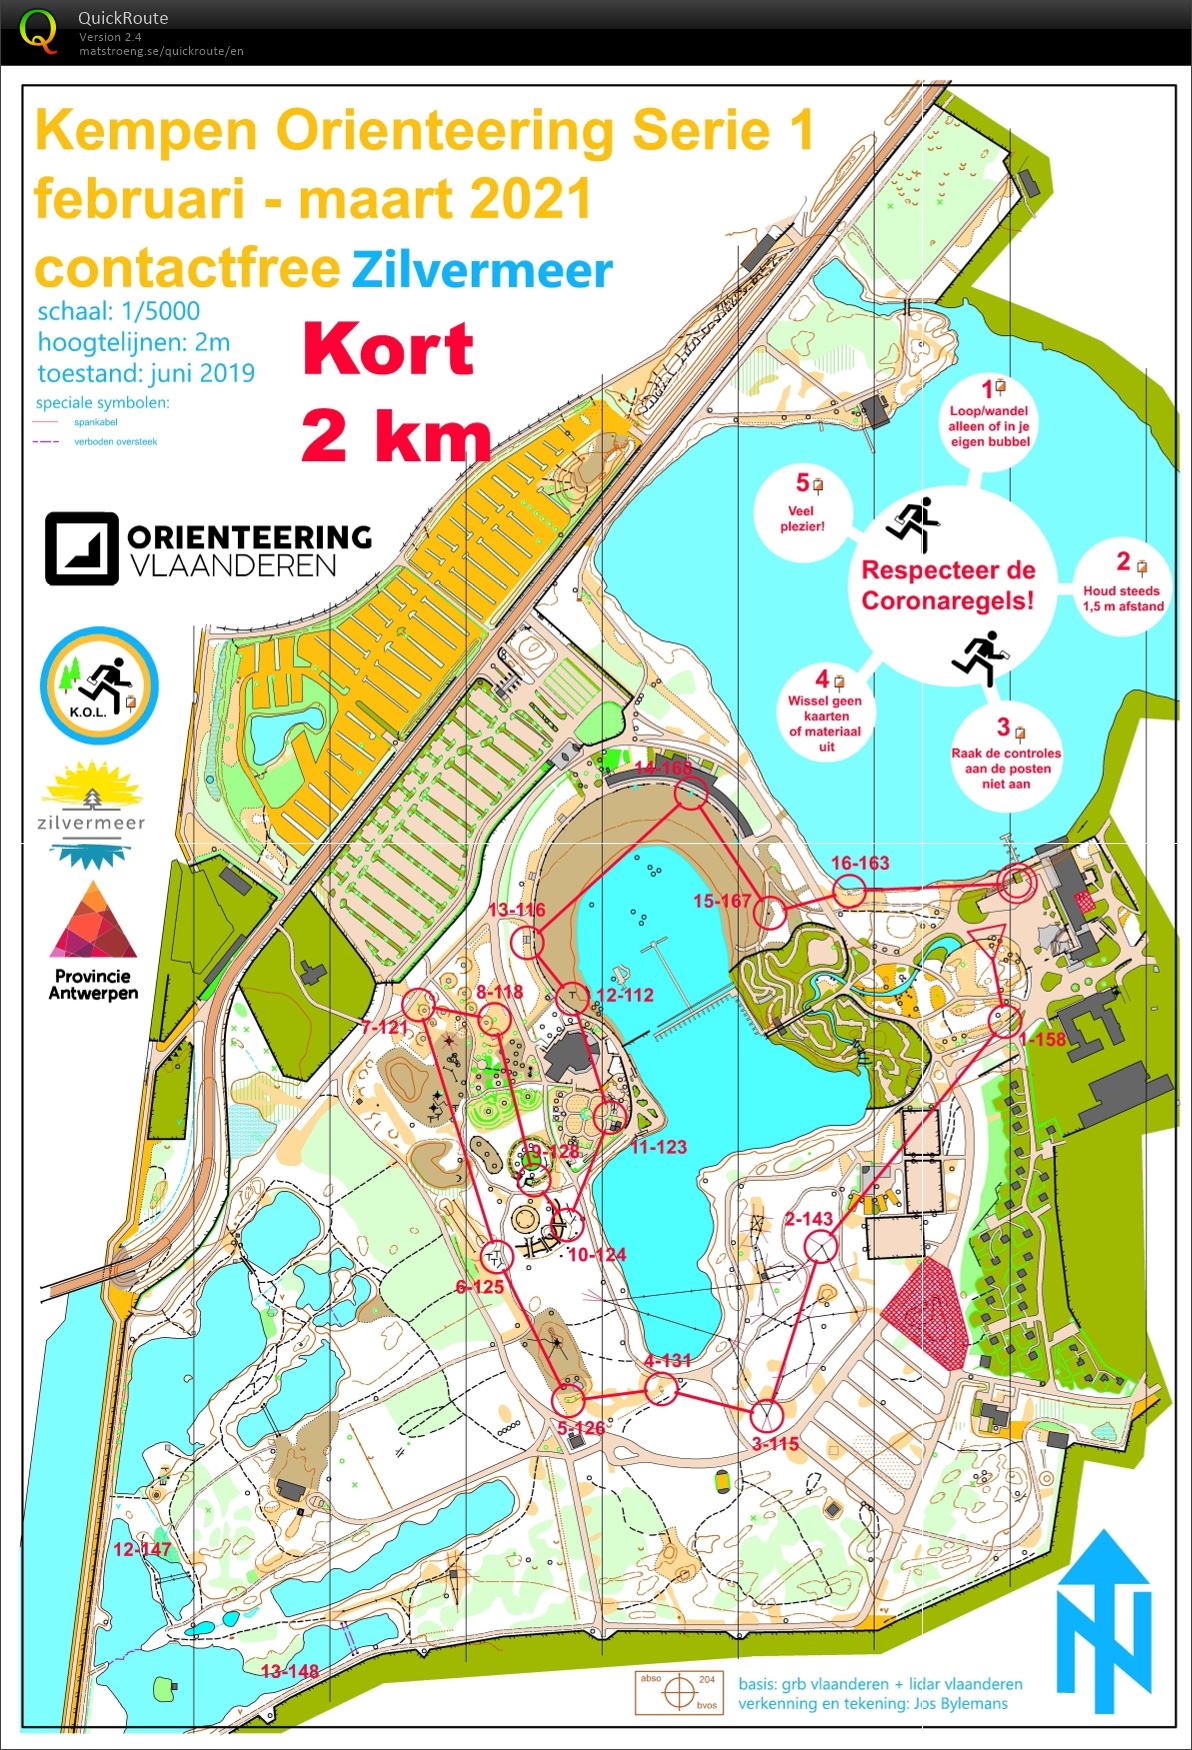 Kempen Orienteering Series - Zilvermeer - Kort (07-03-2021)